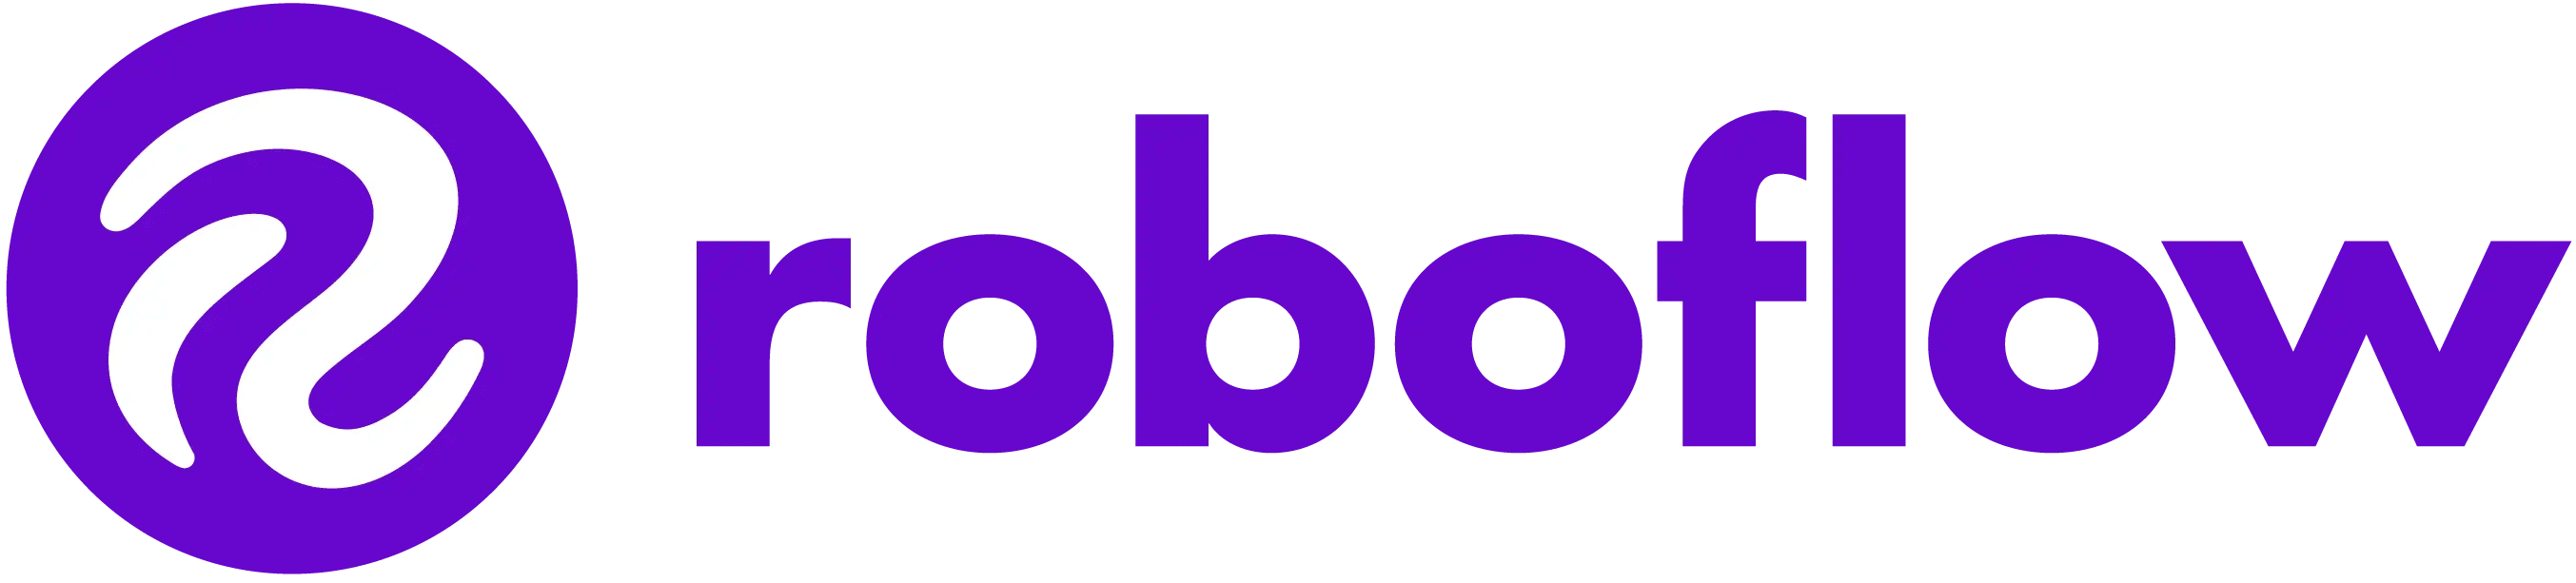 Roboflow logo in purple